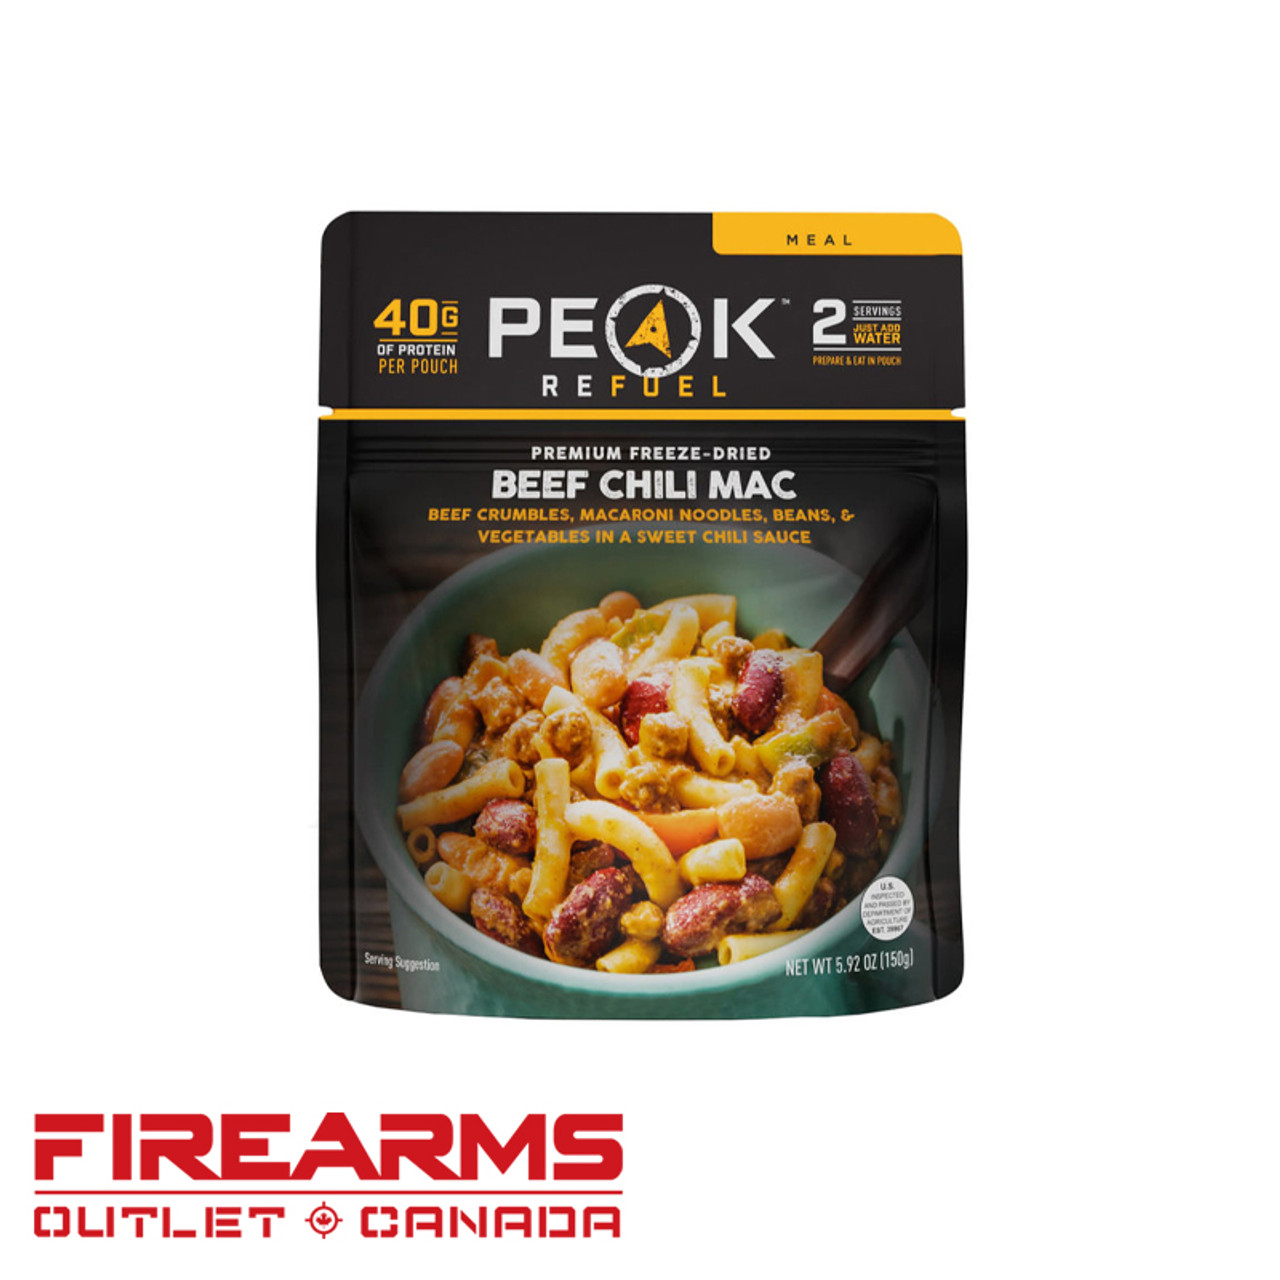 Peak Refuel - Three Bean Chili Mac [57786]